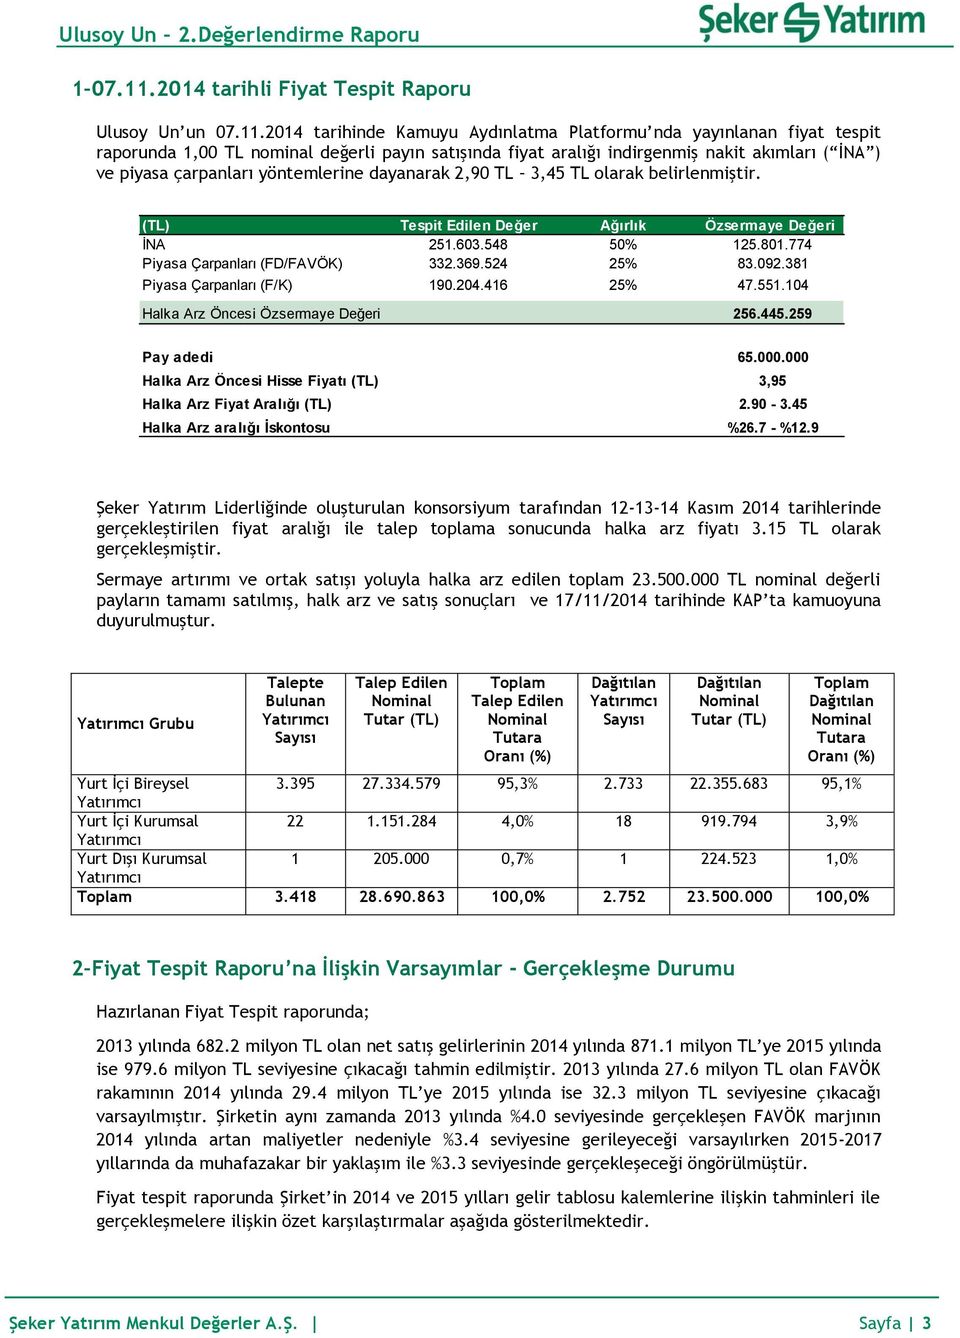 2014 tarihinde Kamuyu Aydınlatma Platformu nda yayınlanan fiyat tespit raporunda 1,00 TL nominal değerli payın satışında fiyat aralığı indirgenmiş nakit akımları ( İNA ) ve piyasa çarpanları